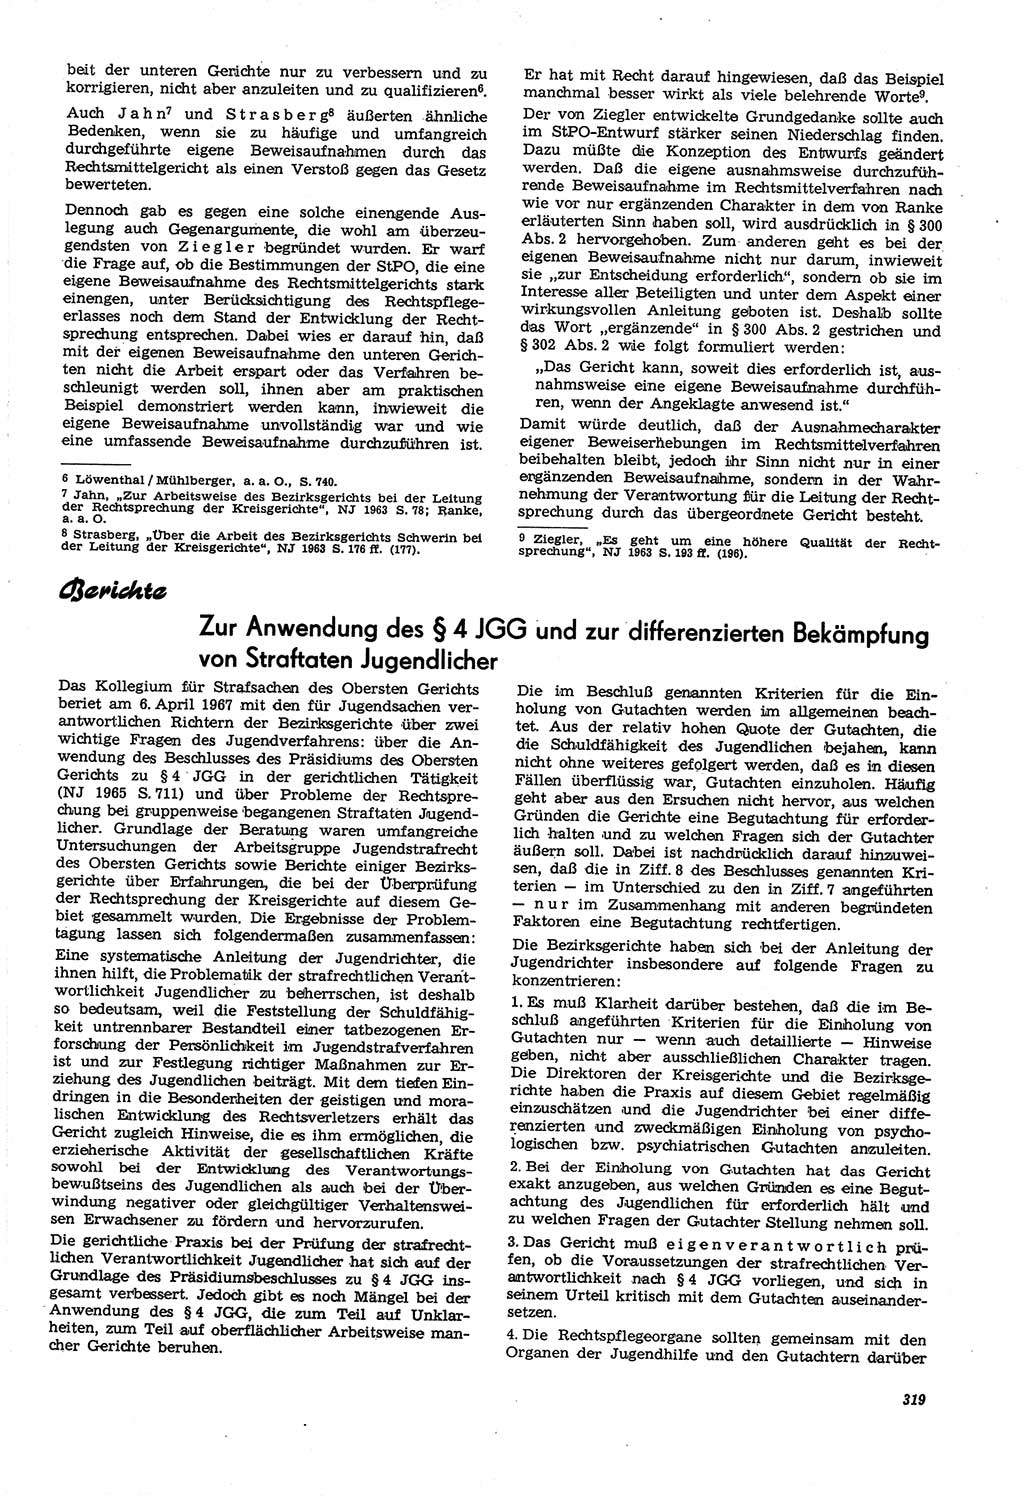 Neue Justiz (NJ), Zeitschrift für Recht und Rechtswissenschaft [Deutsche Demokratische Republik (DDR)], 21. Jahrgang 1967, Seite 319 (NJ DDR 1967, S. 319)